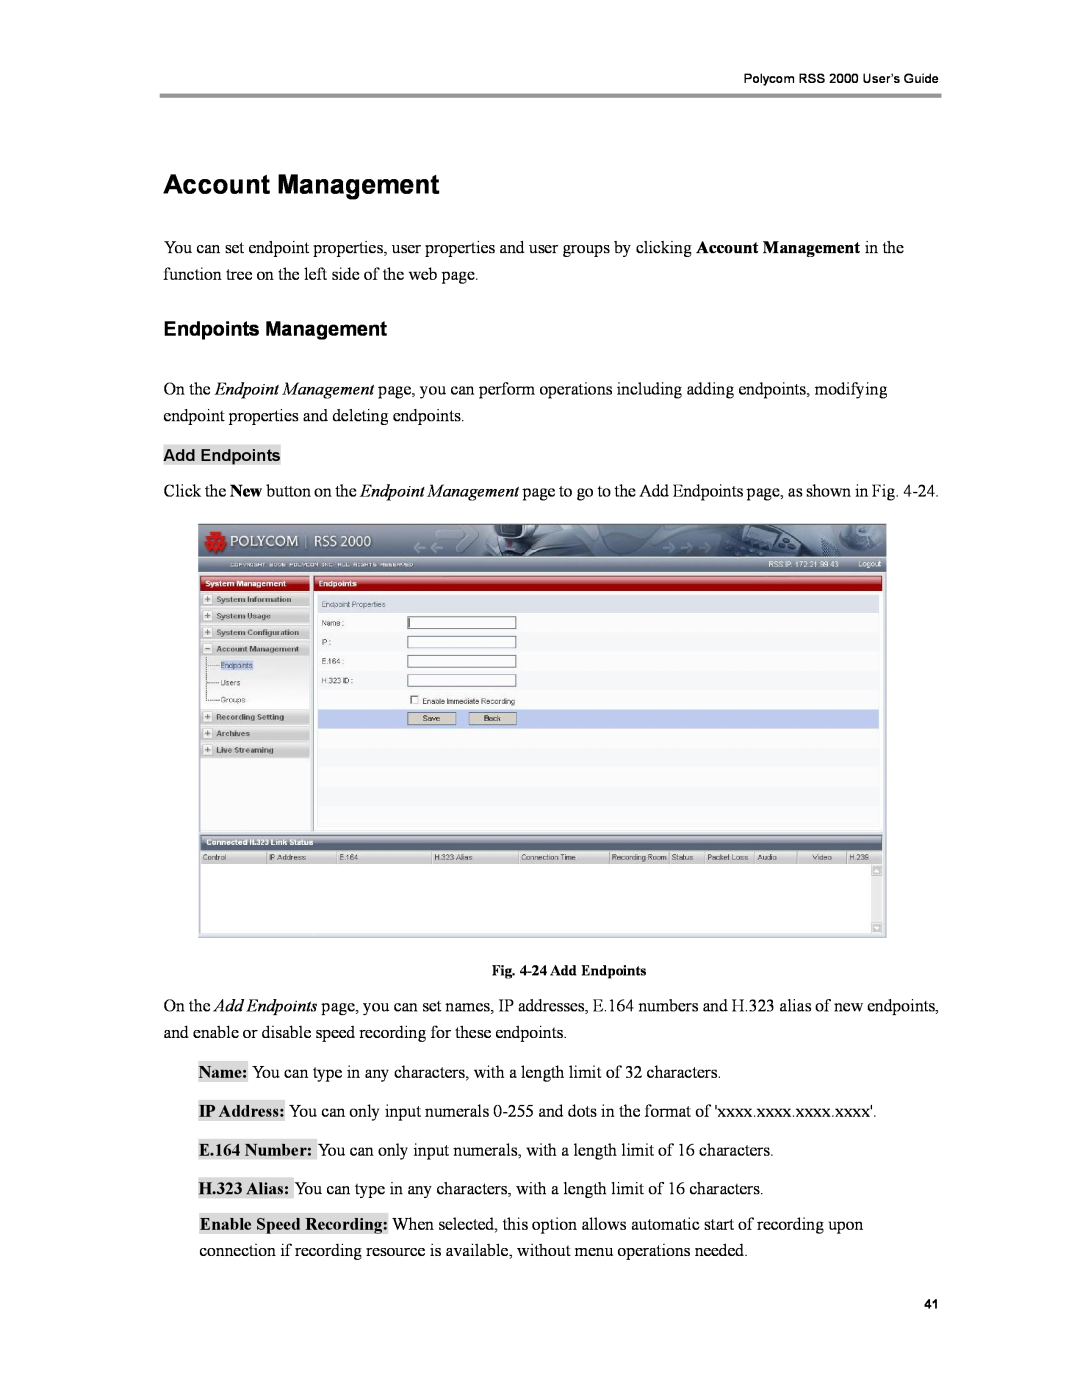 Polycom RSS 2000 manual Account Management, Endpoints Management 